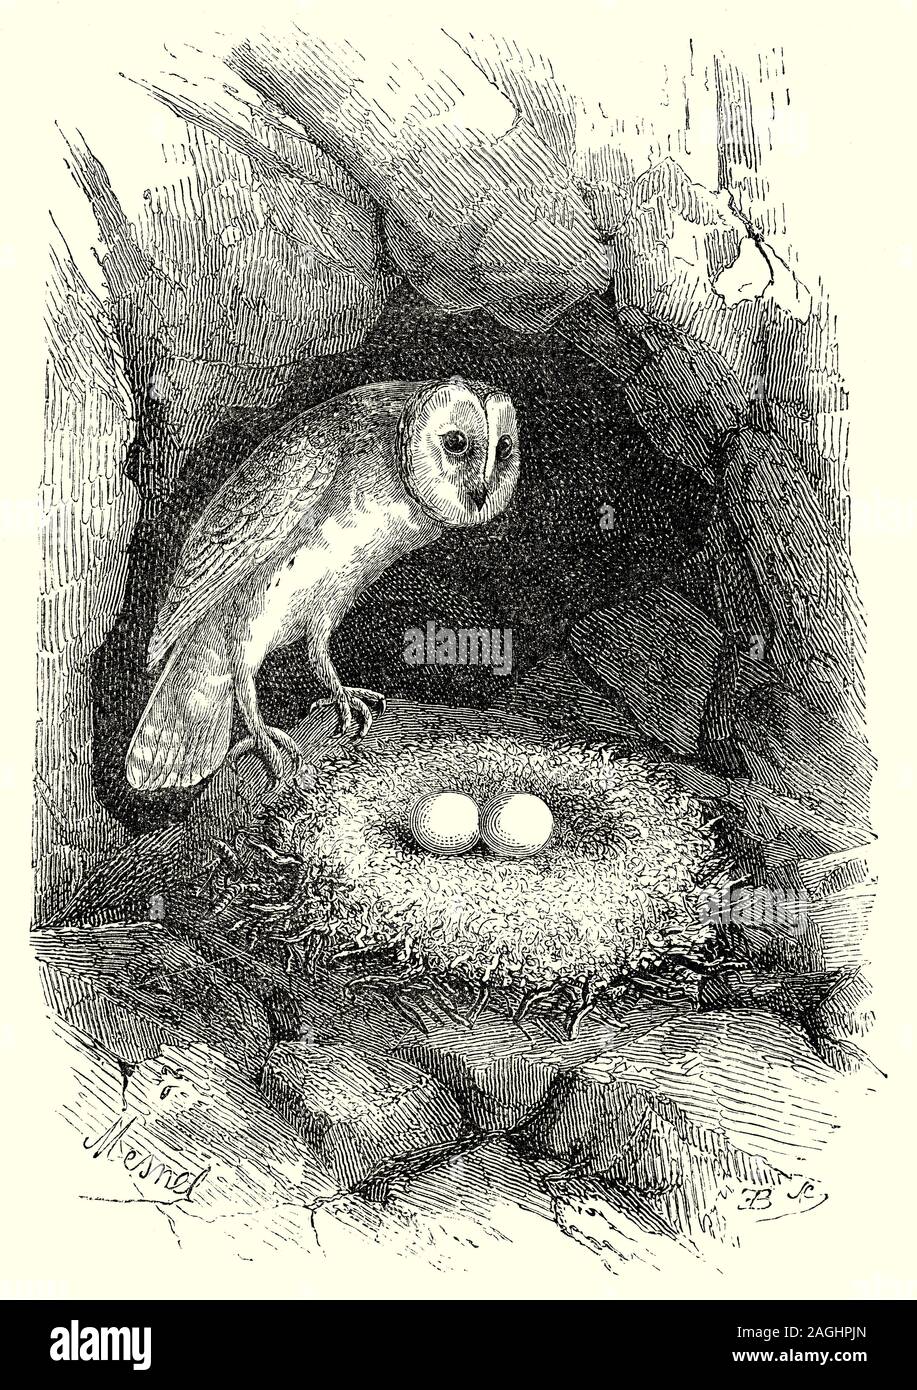 Ornithologie: Zucht und Nester: Die schleiereule (Tyto alba) ist die am weitesten verbreiteten Arten von Owl und fanden fast überall in der Welt außer Polar- und Wüstenregionen. Nesting findet zwischen März und Juni, wenn die Temperaturen steigen und die Höhe der Beute - Reich der Nahrungssuche Lebensraum um das Nest und oft mit der Phase der Nagetier fülle Zyklus. Schleiereulen sind Hohlraum nesters, indem sie Löcher in Bäume, Spalten in Felswänden und, vor allem in Europa, alte Gebäude wie Bauernhof Schuppen und Kirchtürme. Stockfoto